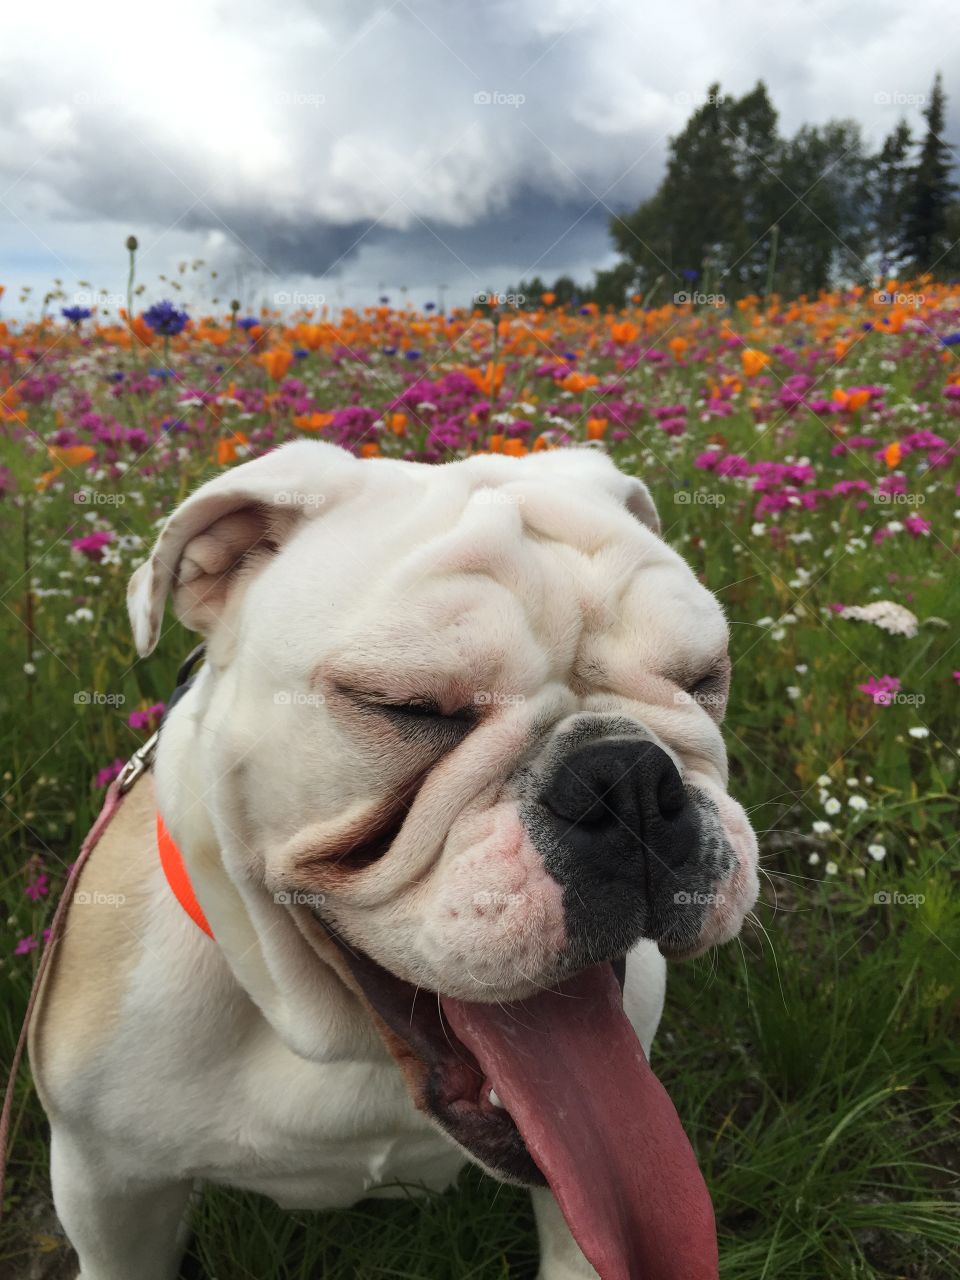 Hazel having some fun in the flower field